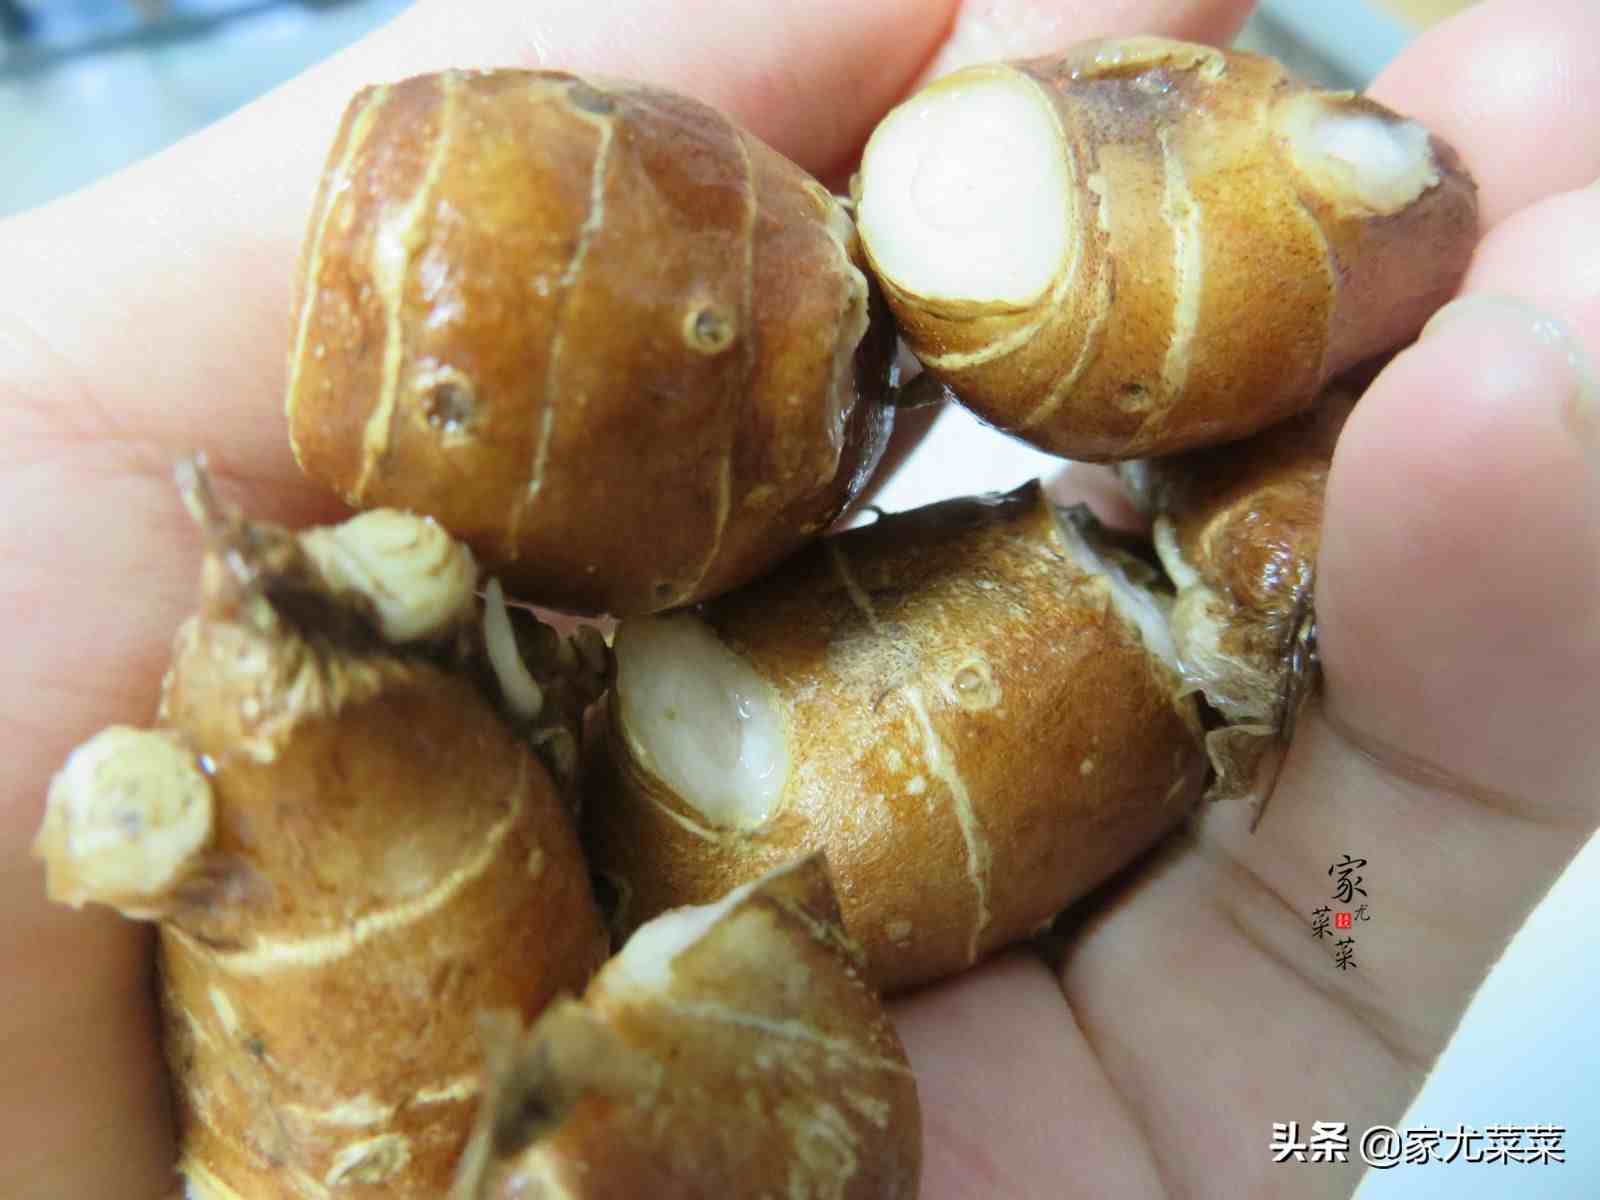 沙姜鸡的做法|广东沙姜鸡的正宗家常制作方法